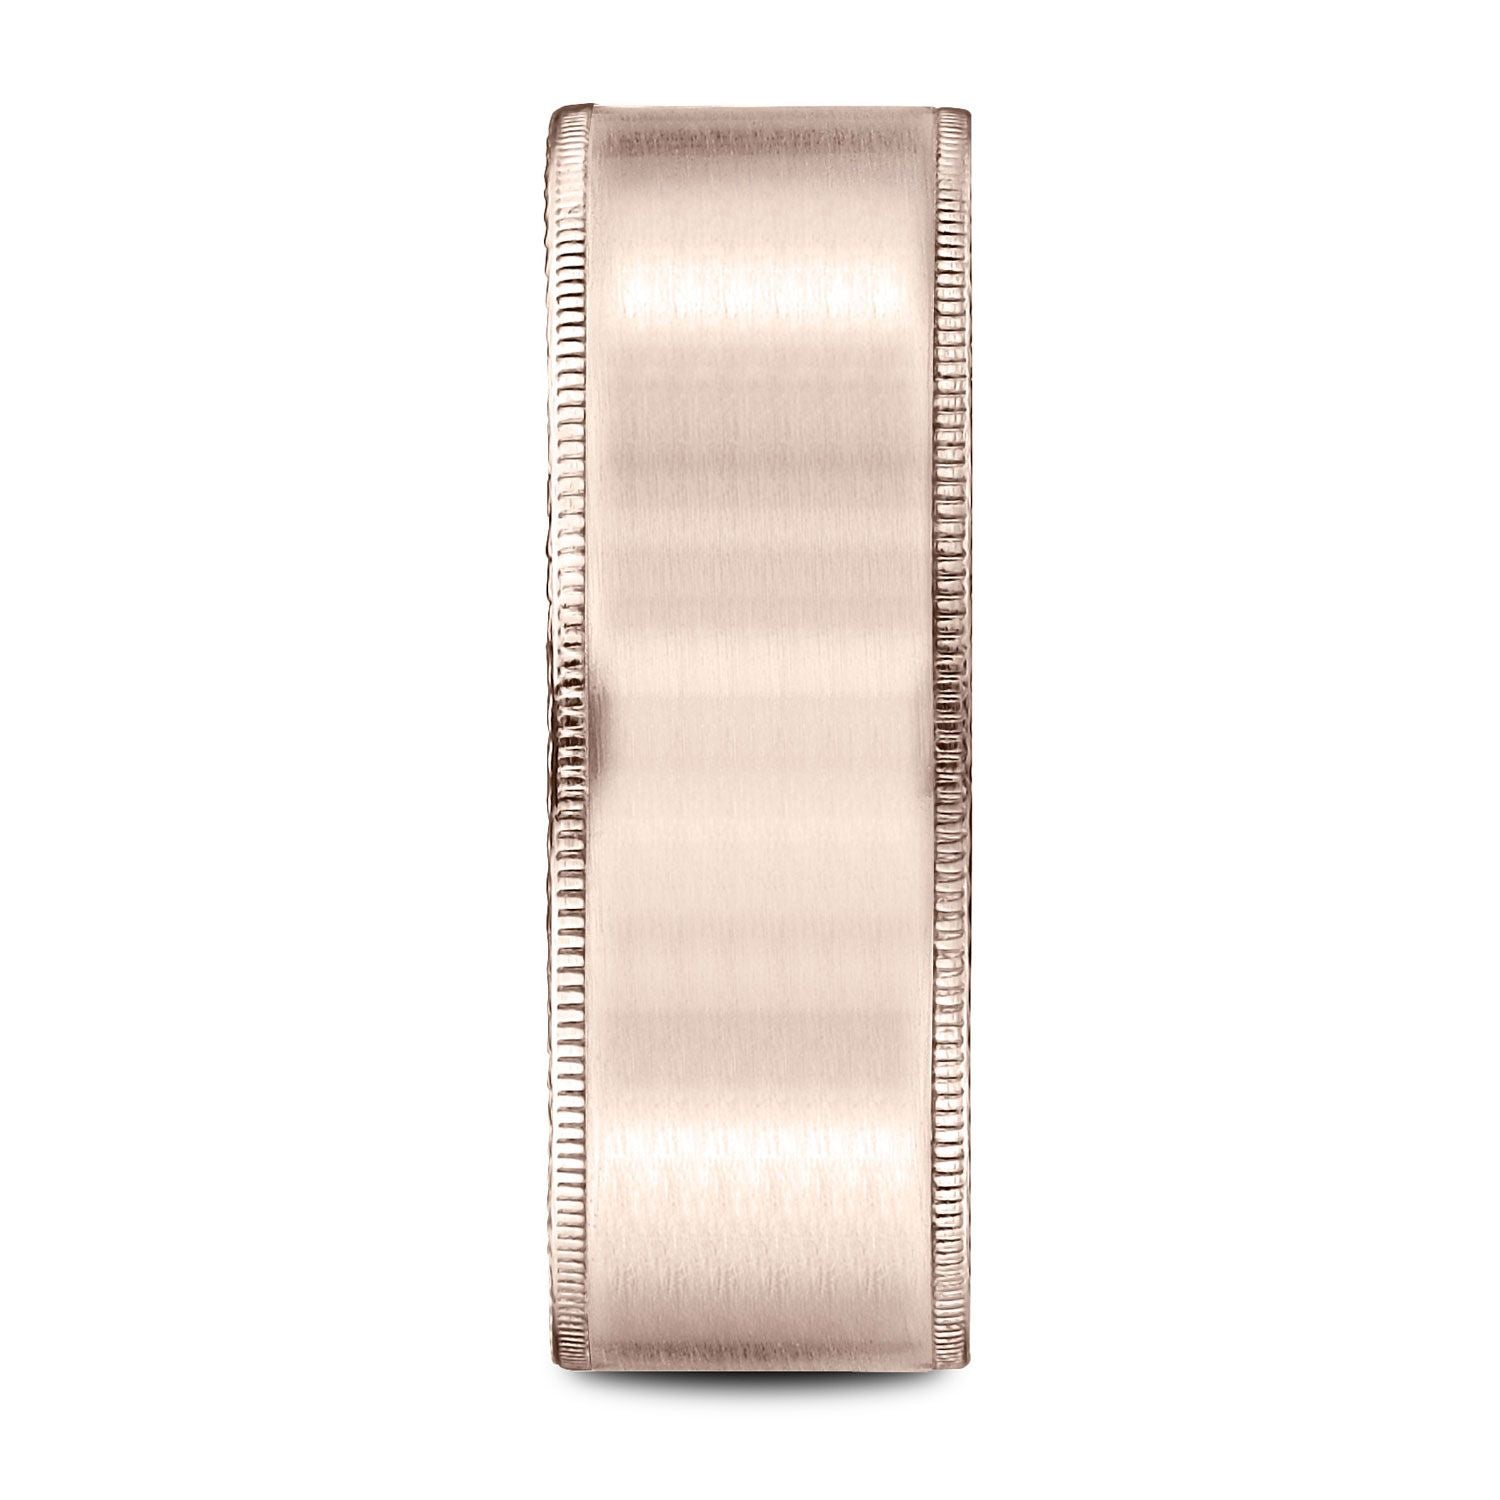 14k Rose Gold 8mm Comfort-fit Riveted Edge Satin Finish Design Band –